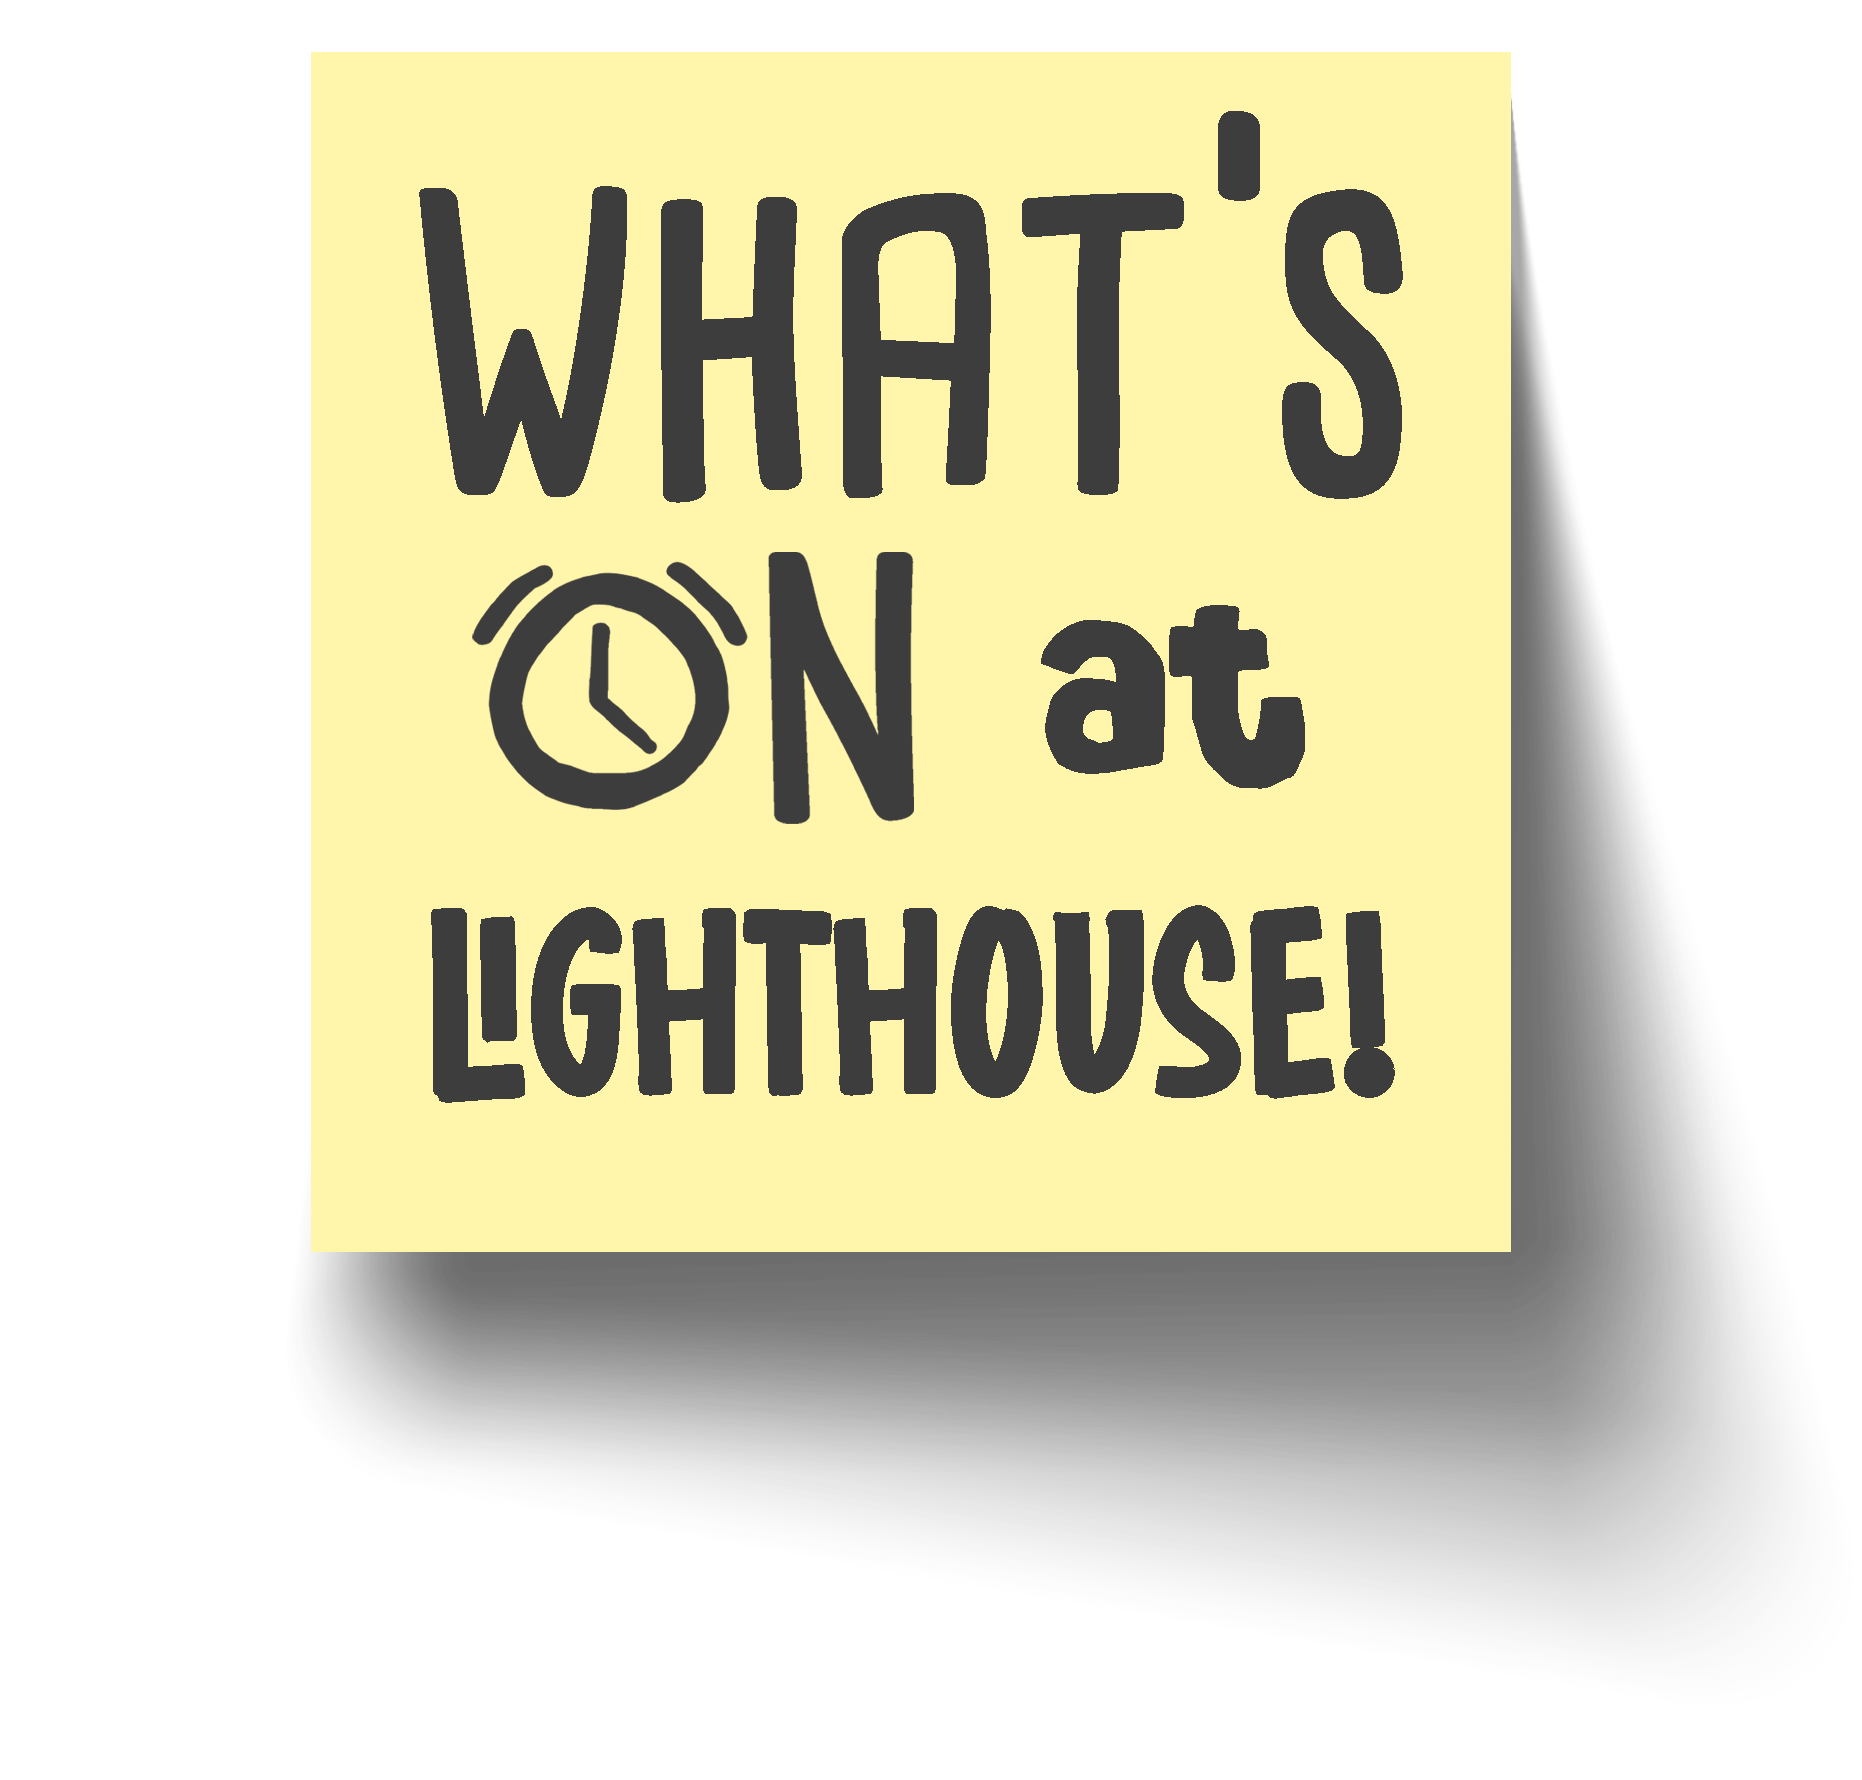 Lighthouse C3 Church events calendar whats on